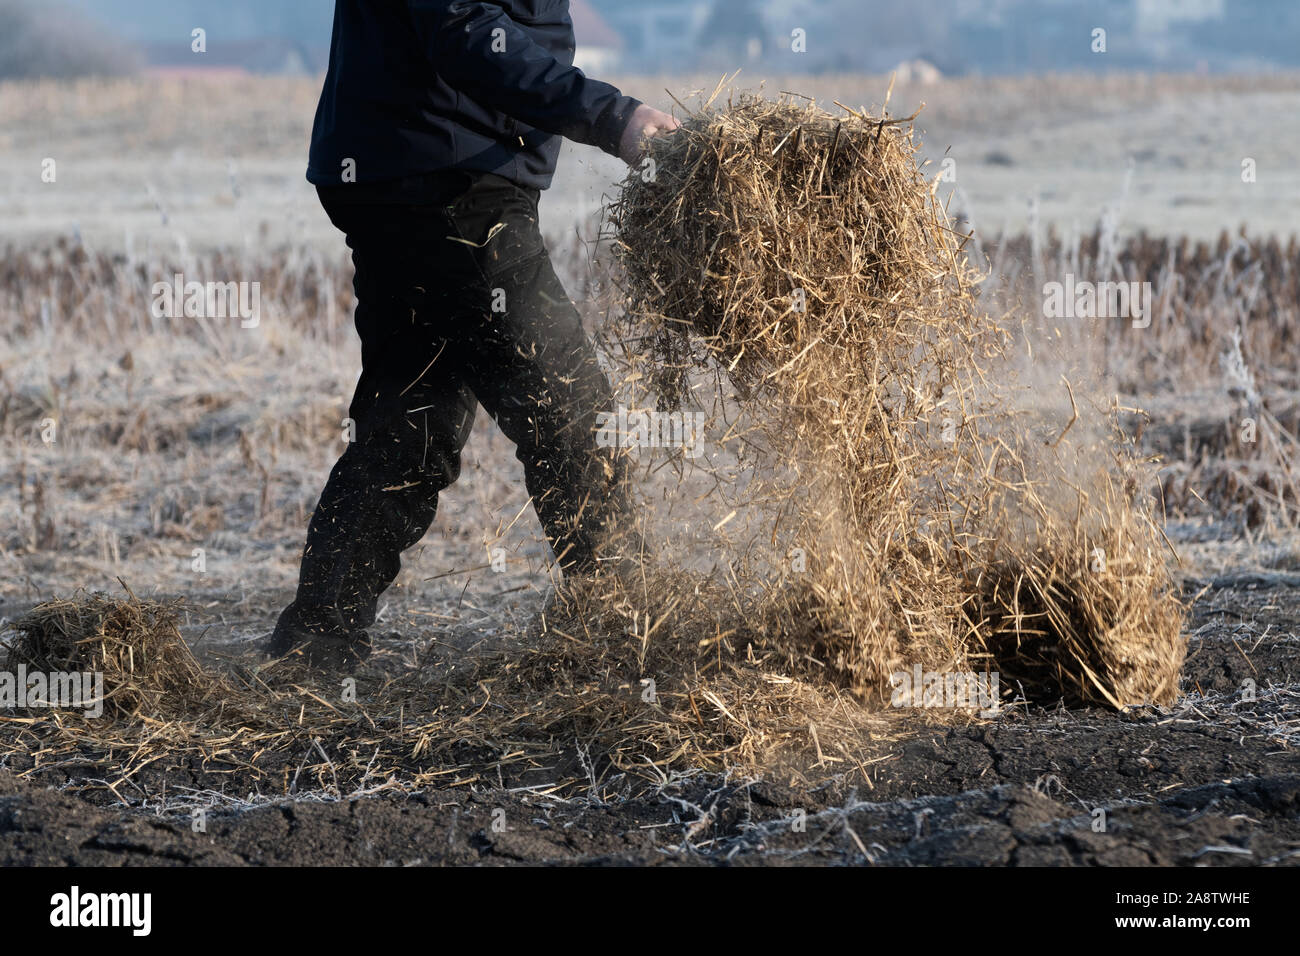 Uomo al lavoro su campo portando la paglia per la copertura del suolo mediante forcone per mantenere il fertile suolo umido e privo di erbacce. Agricoltura e allevamento Foto Stock